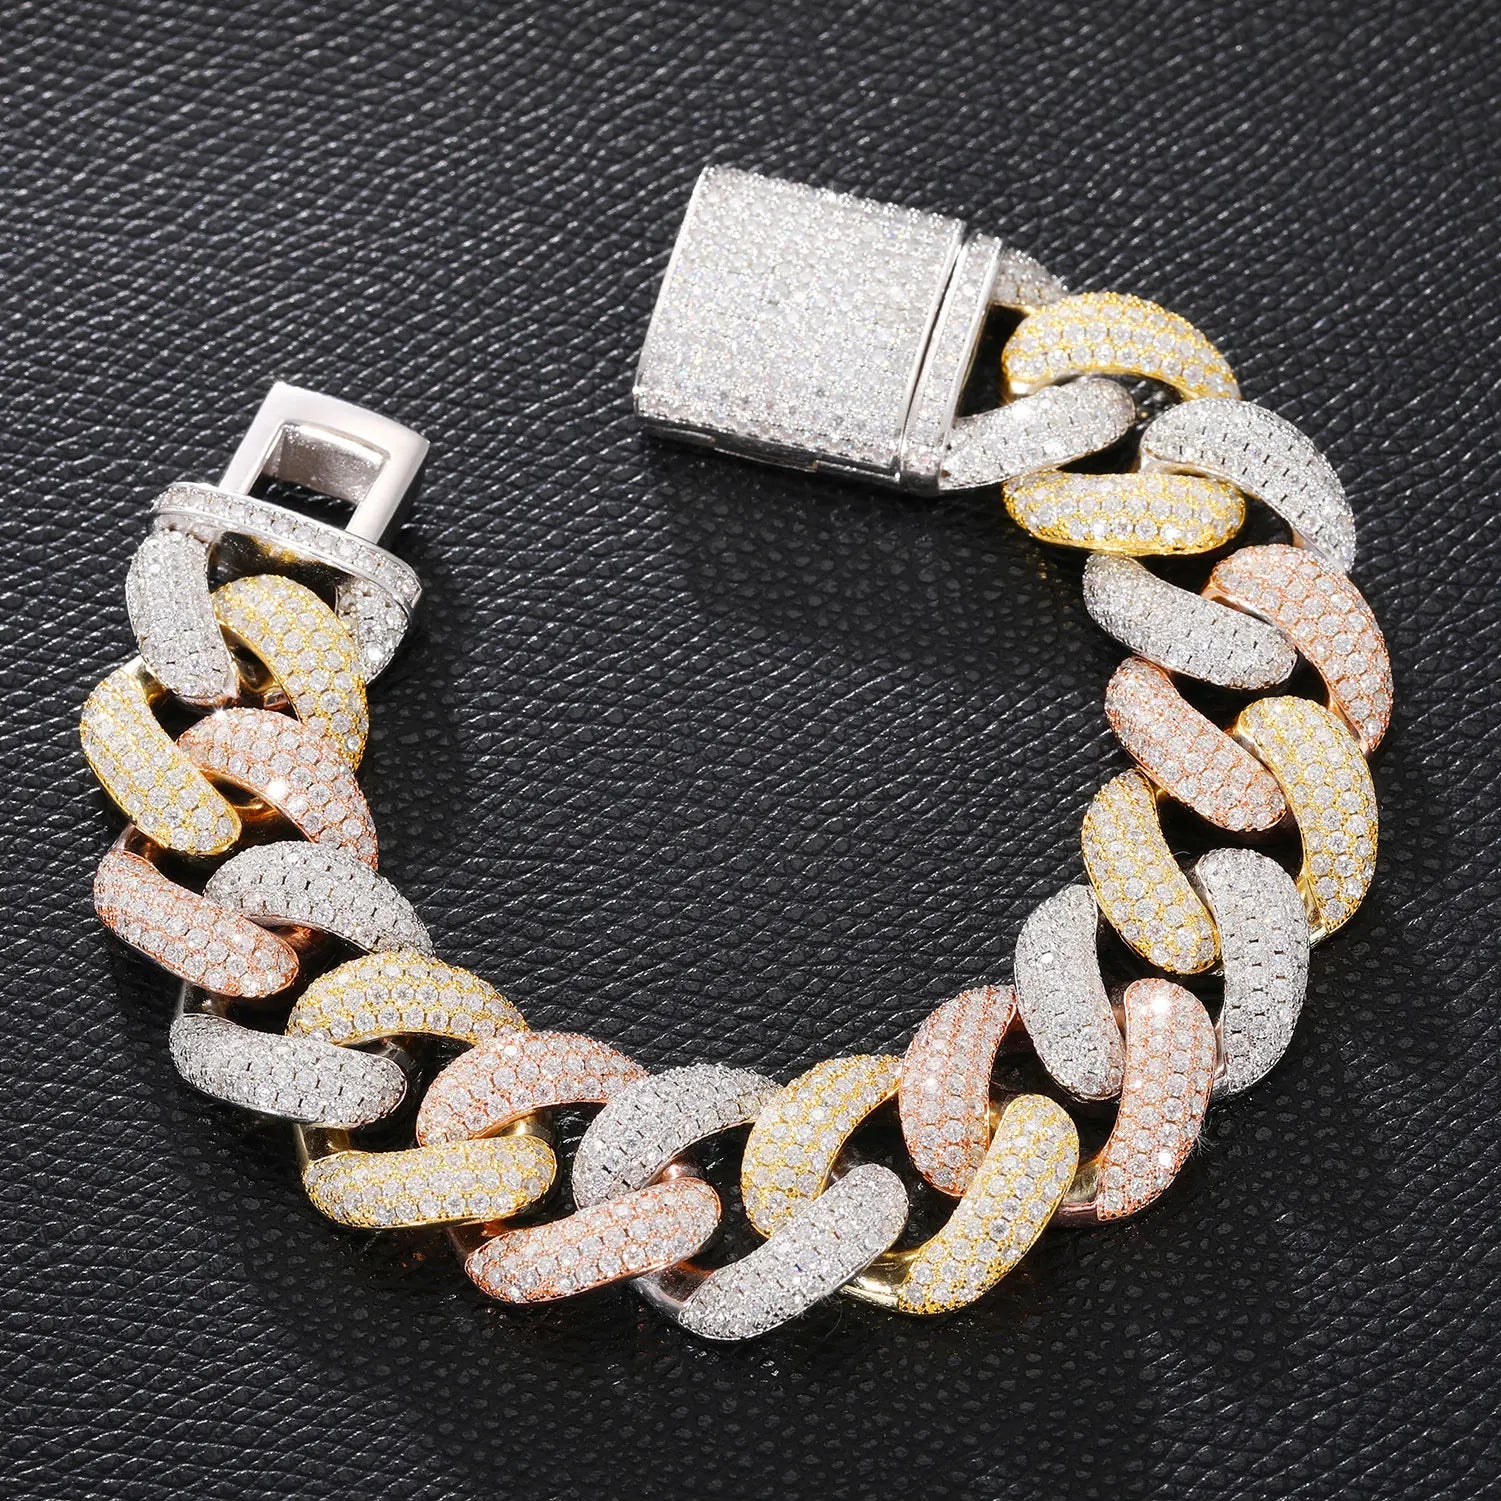 S925 Moissanite Tri-Color Cuban Link Chain Bracelet - 20mm